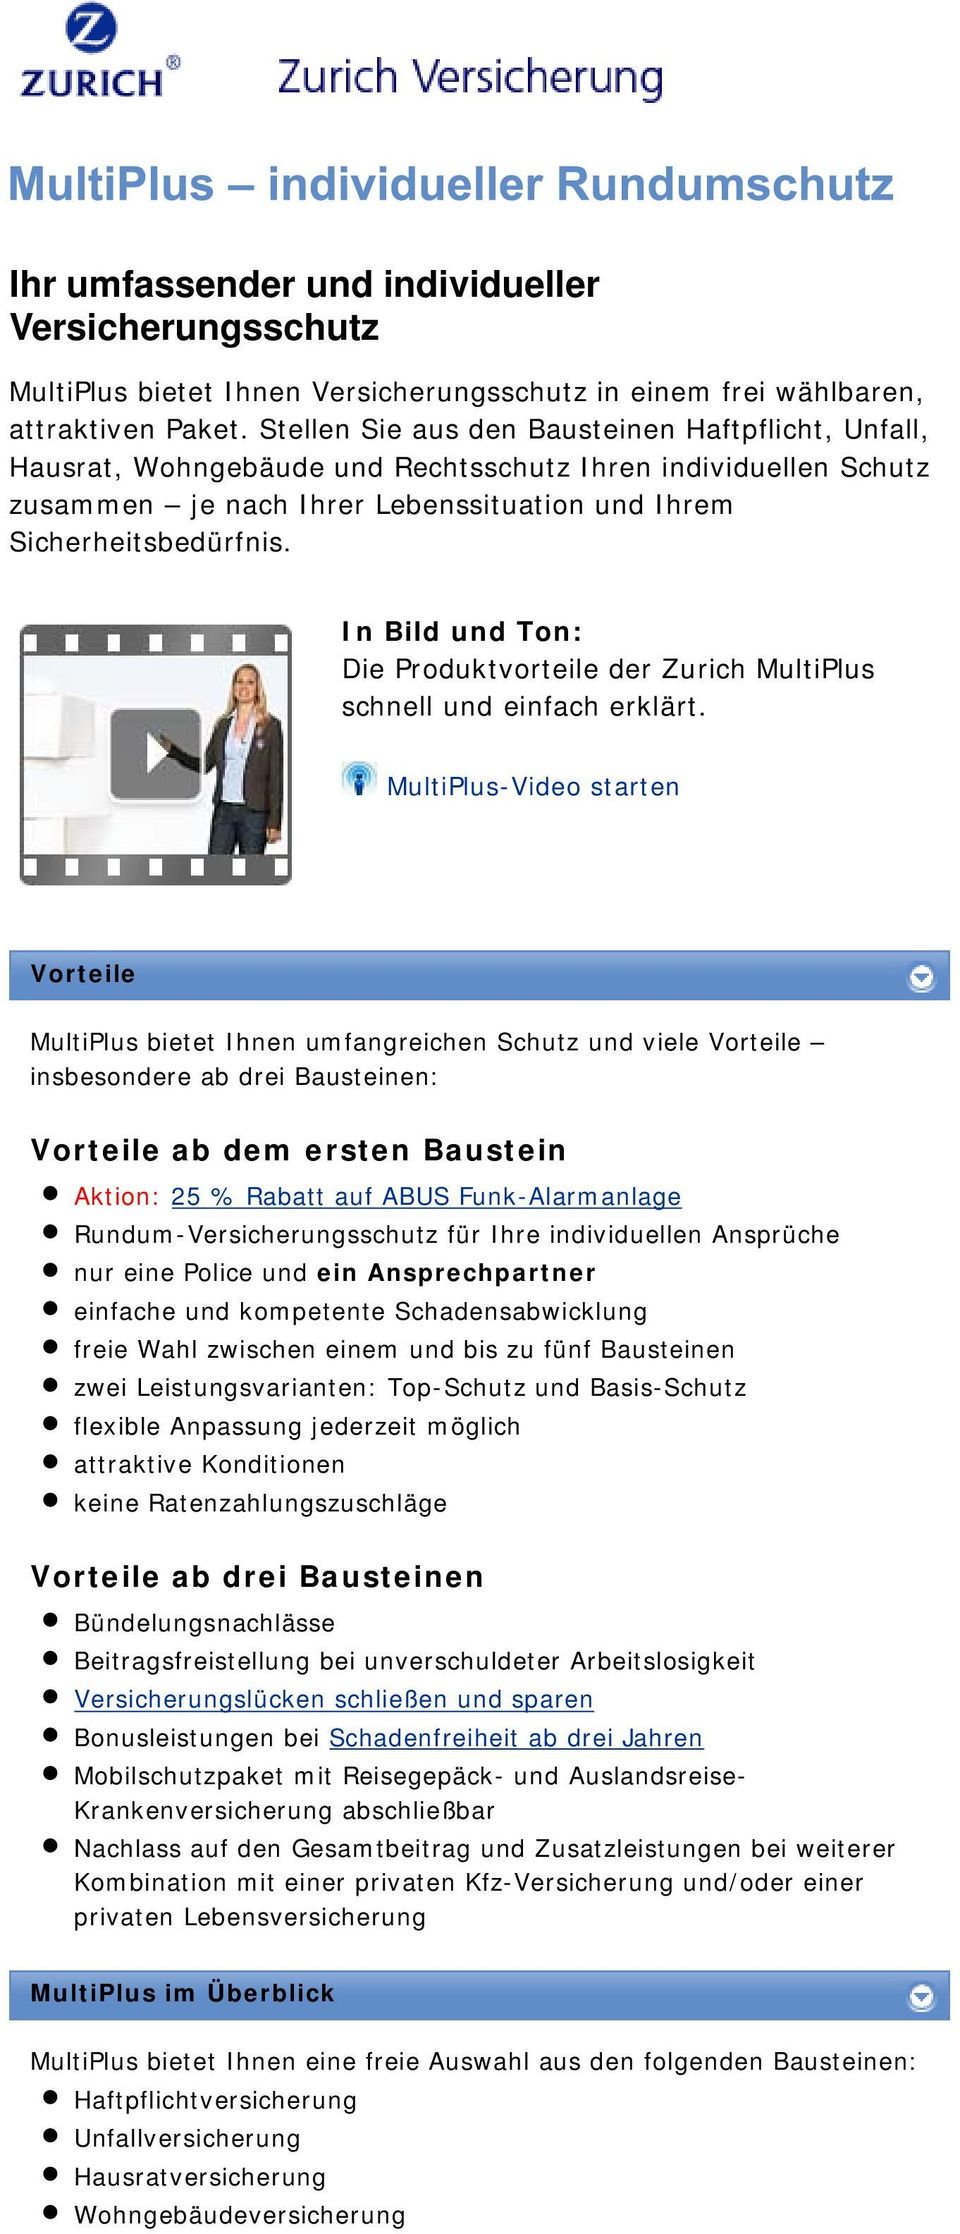 In Bild und Ton: Die Produktvorteile der Zurich MultiPlus schnell und einfach erklärt.